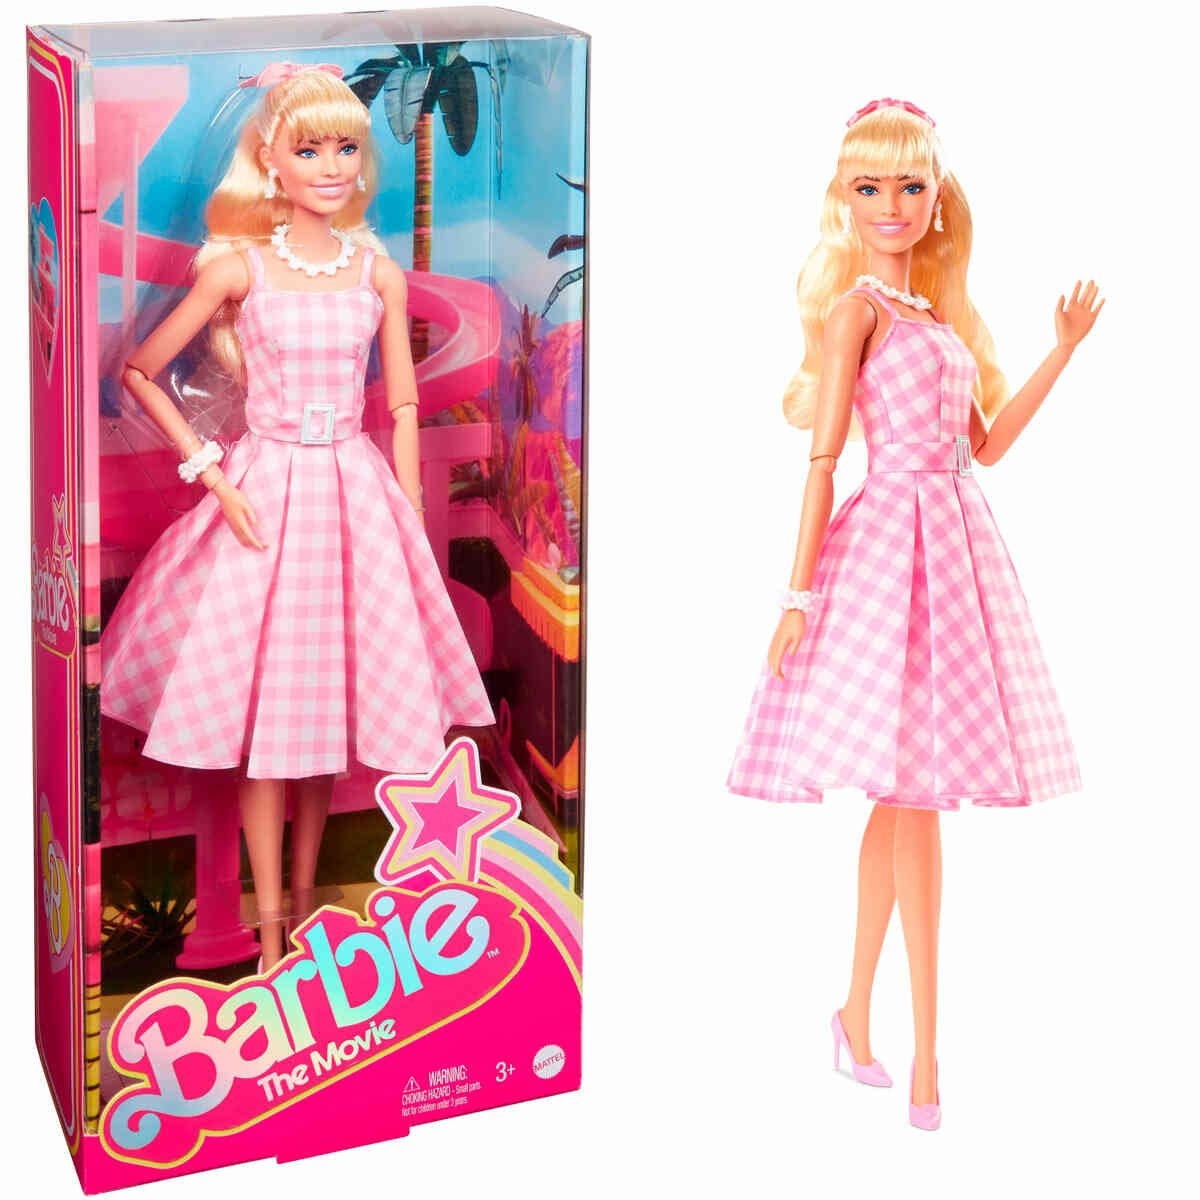 Boneca Articulada Tipo Barbie Musical Com Bicicleta E Acessórios